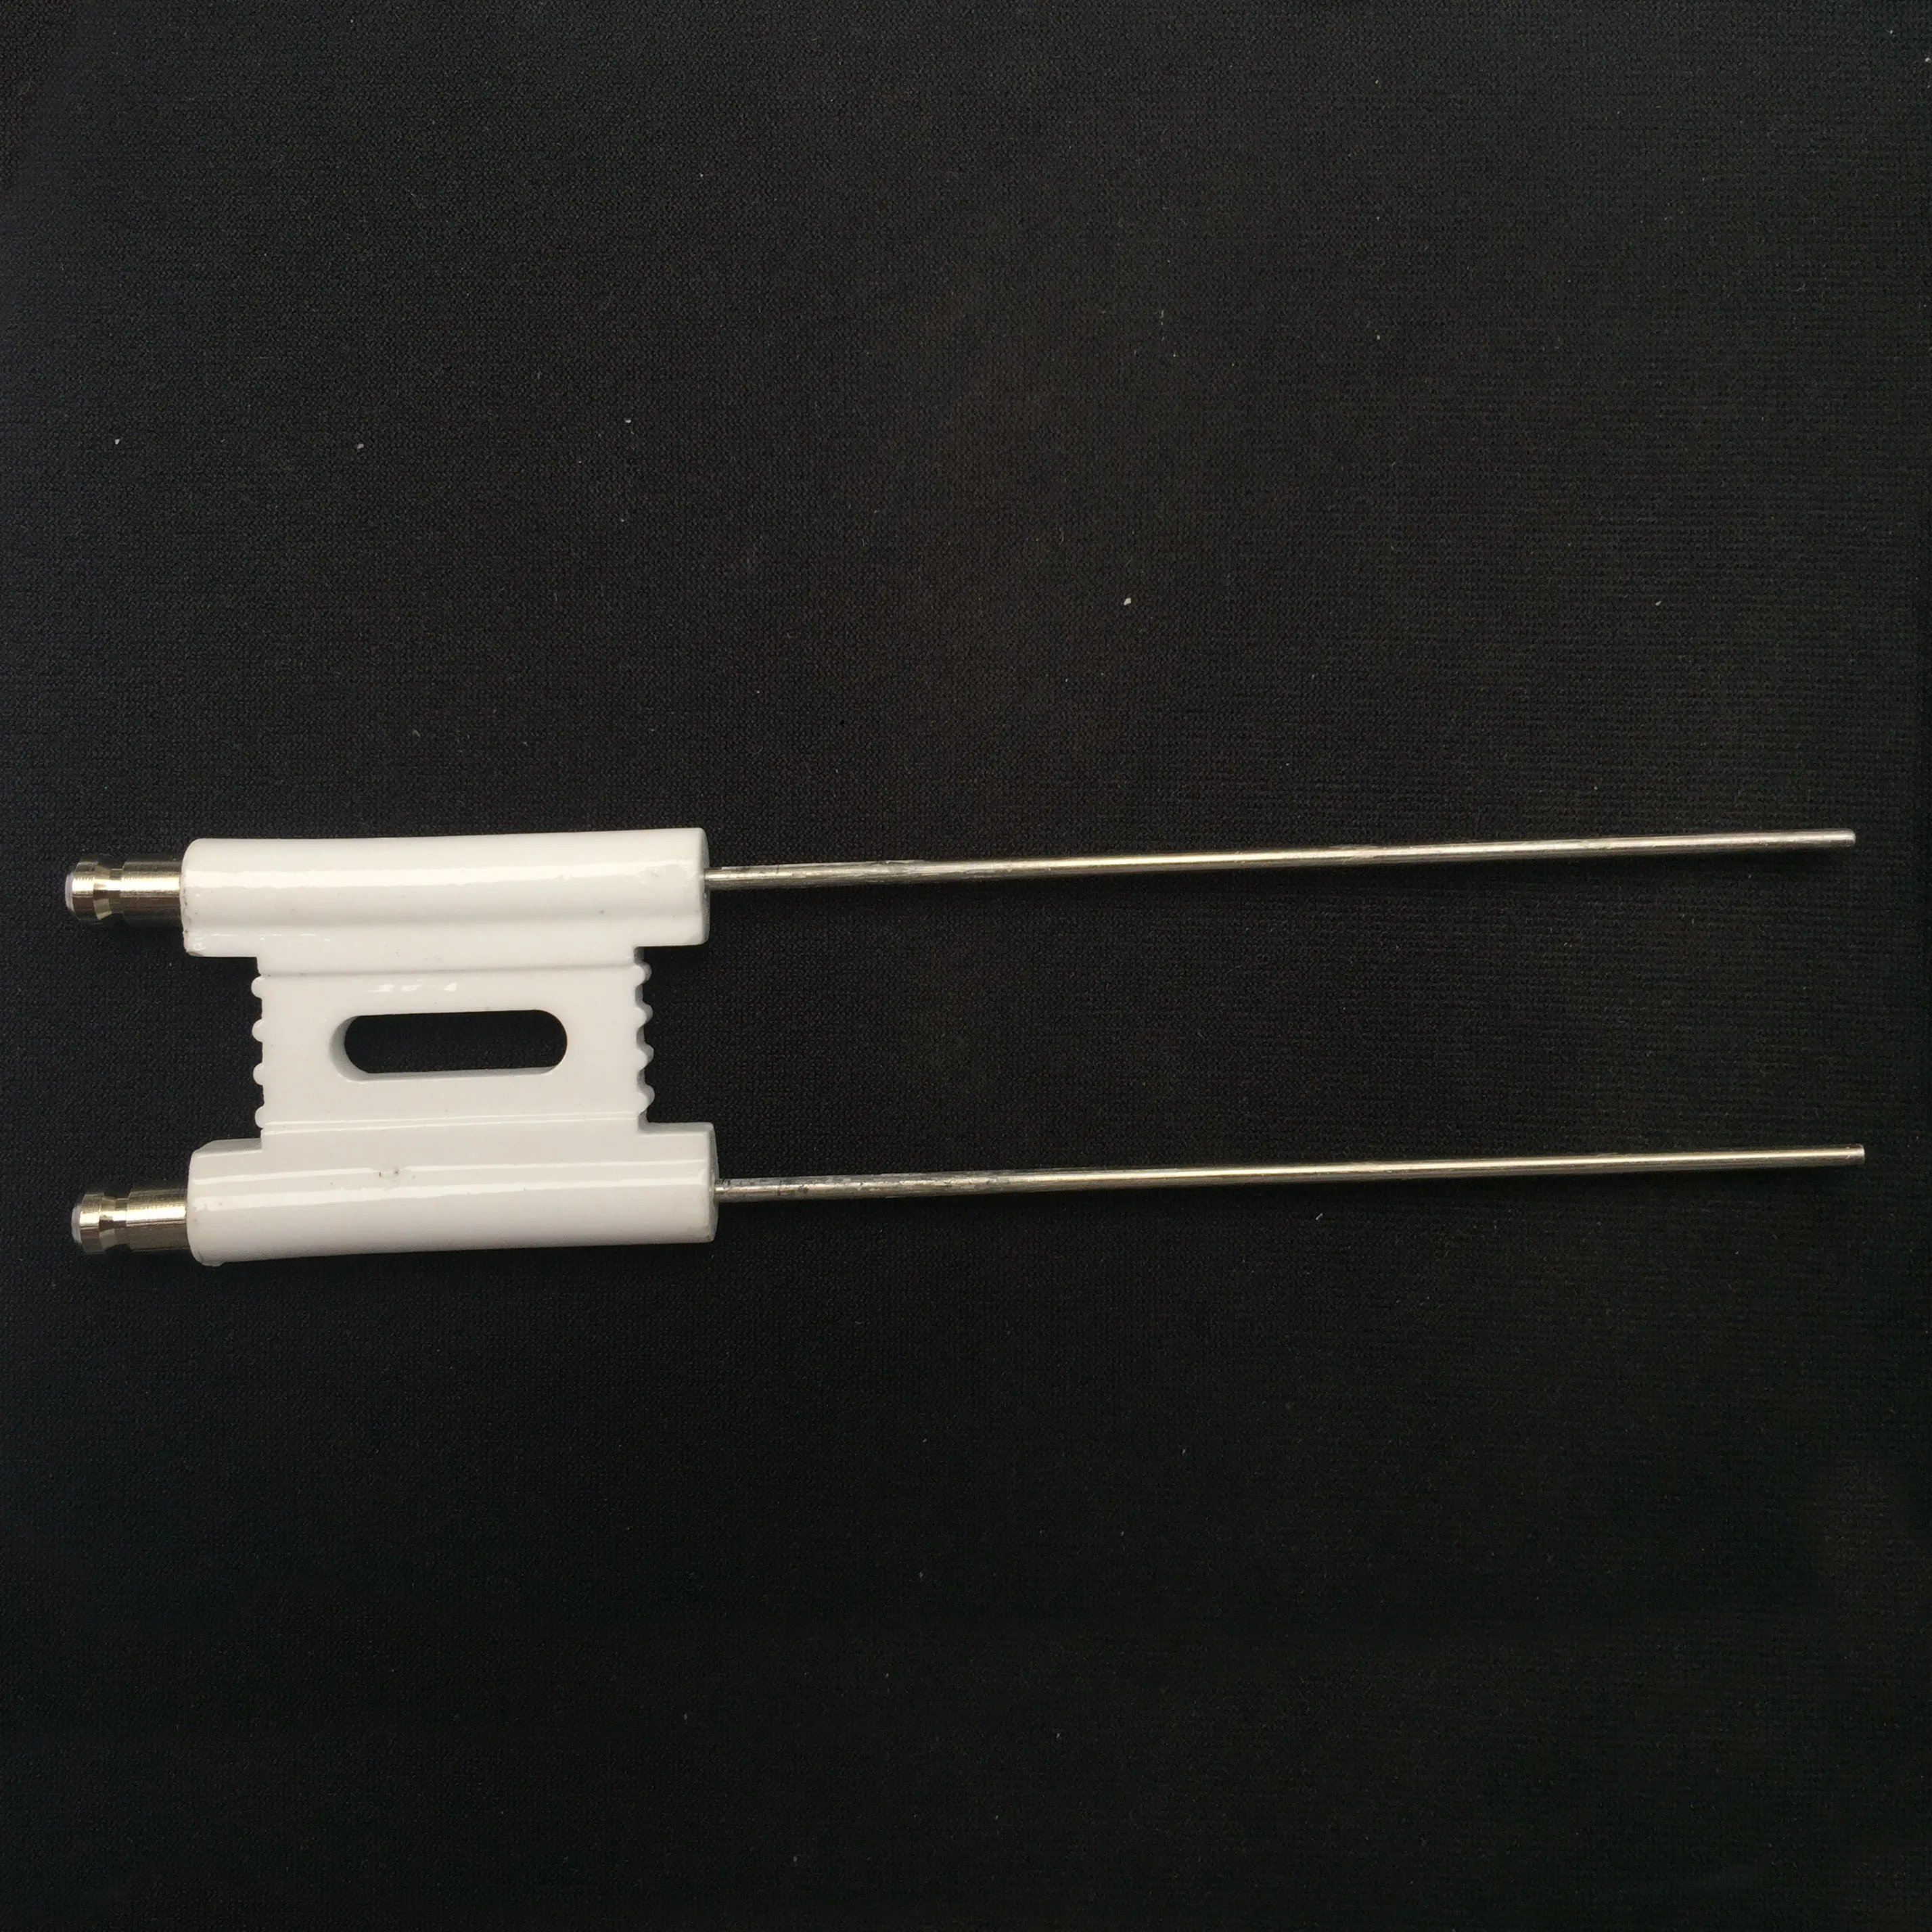 H удлиненные Электроды Зажигания для масляной горелки керамический электрод, двухполюсный электрод зажигания, керамическая игла